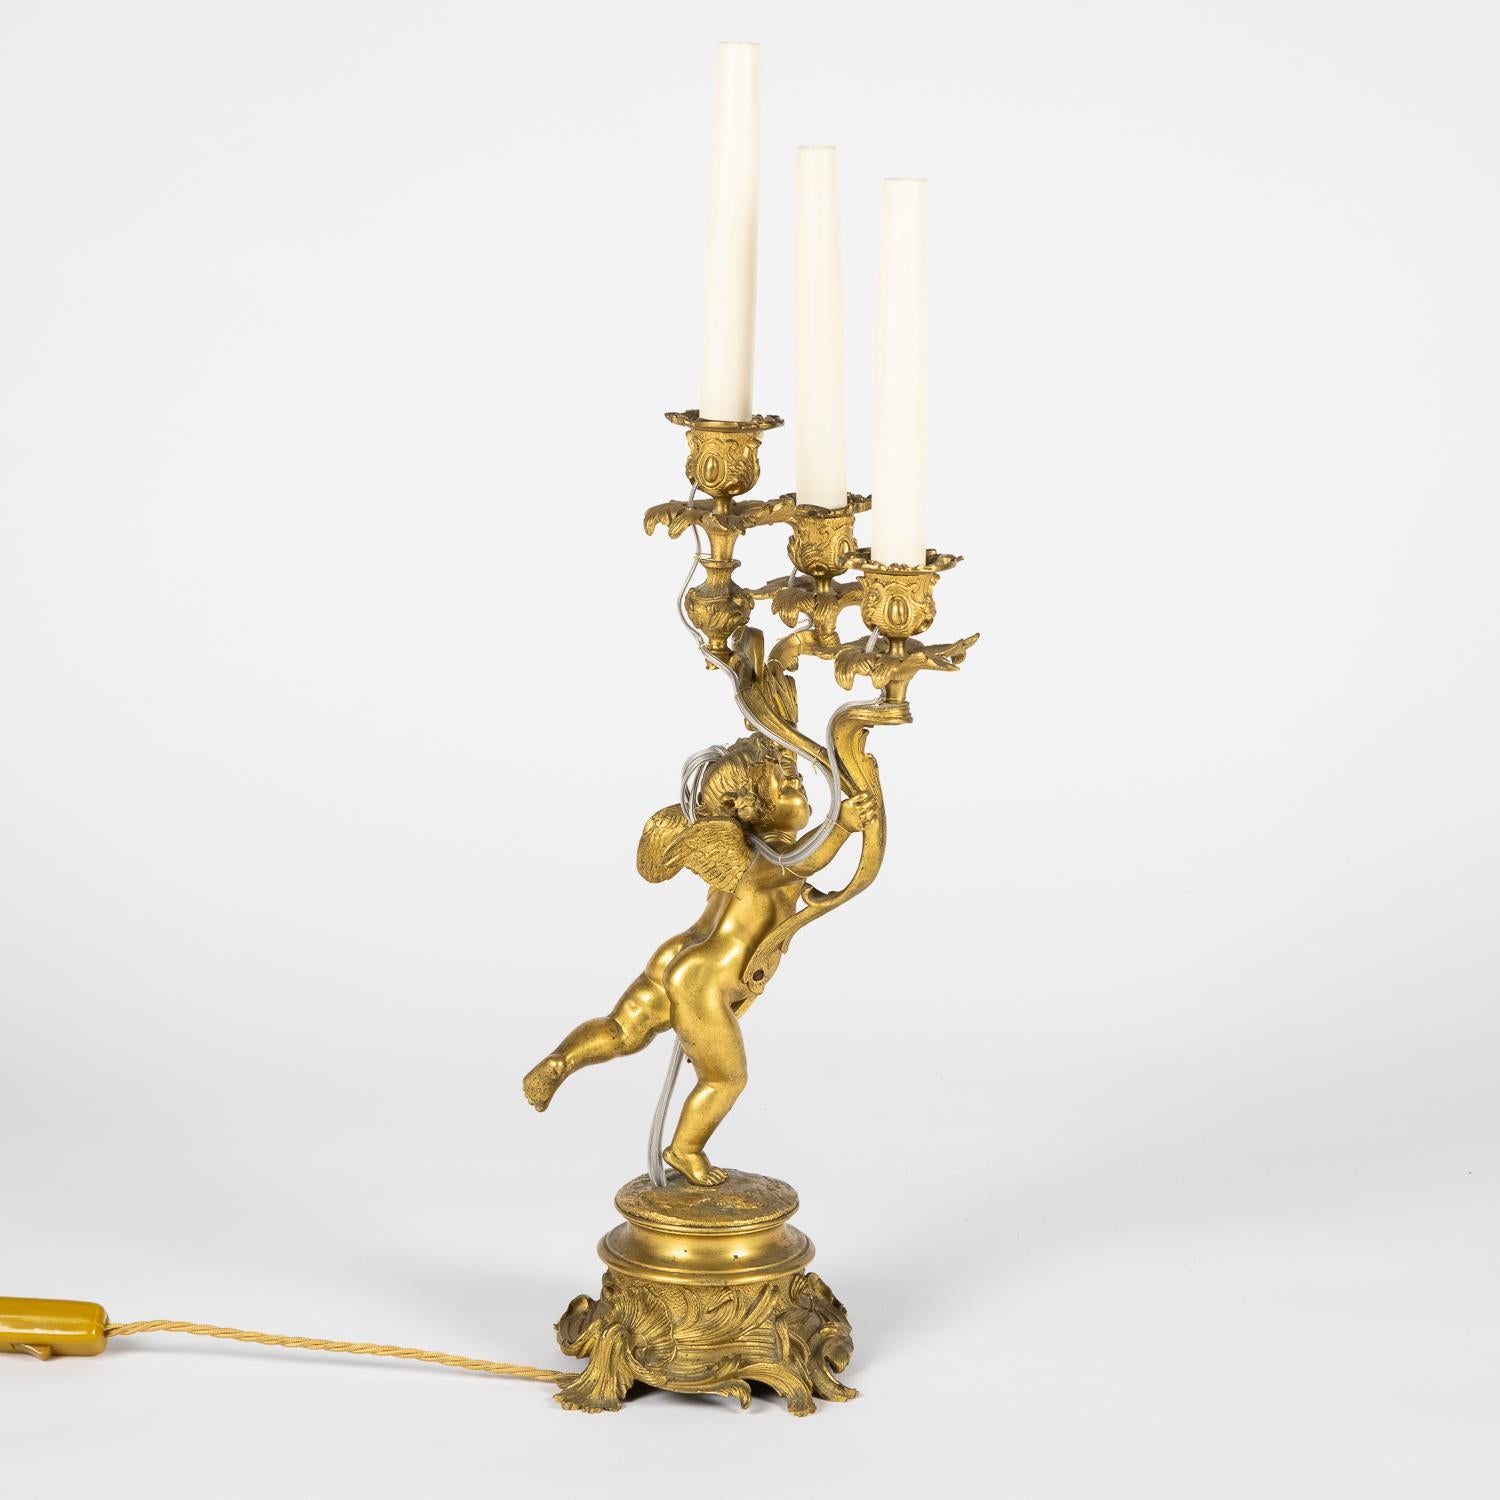 Paire de bougeoirs à trois bras en bronze doré de la fin du XIXe siècle, transformés en électricité.

Recâblés et testés.